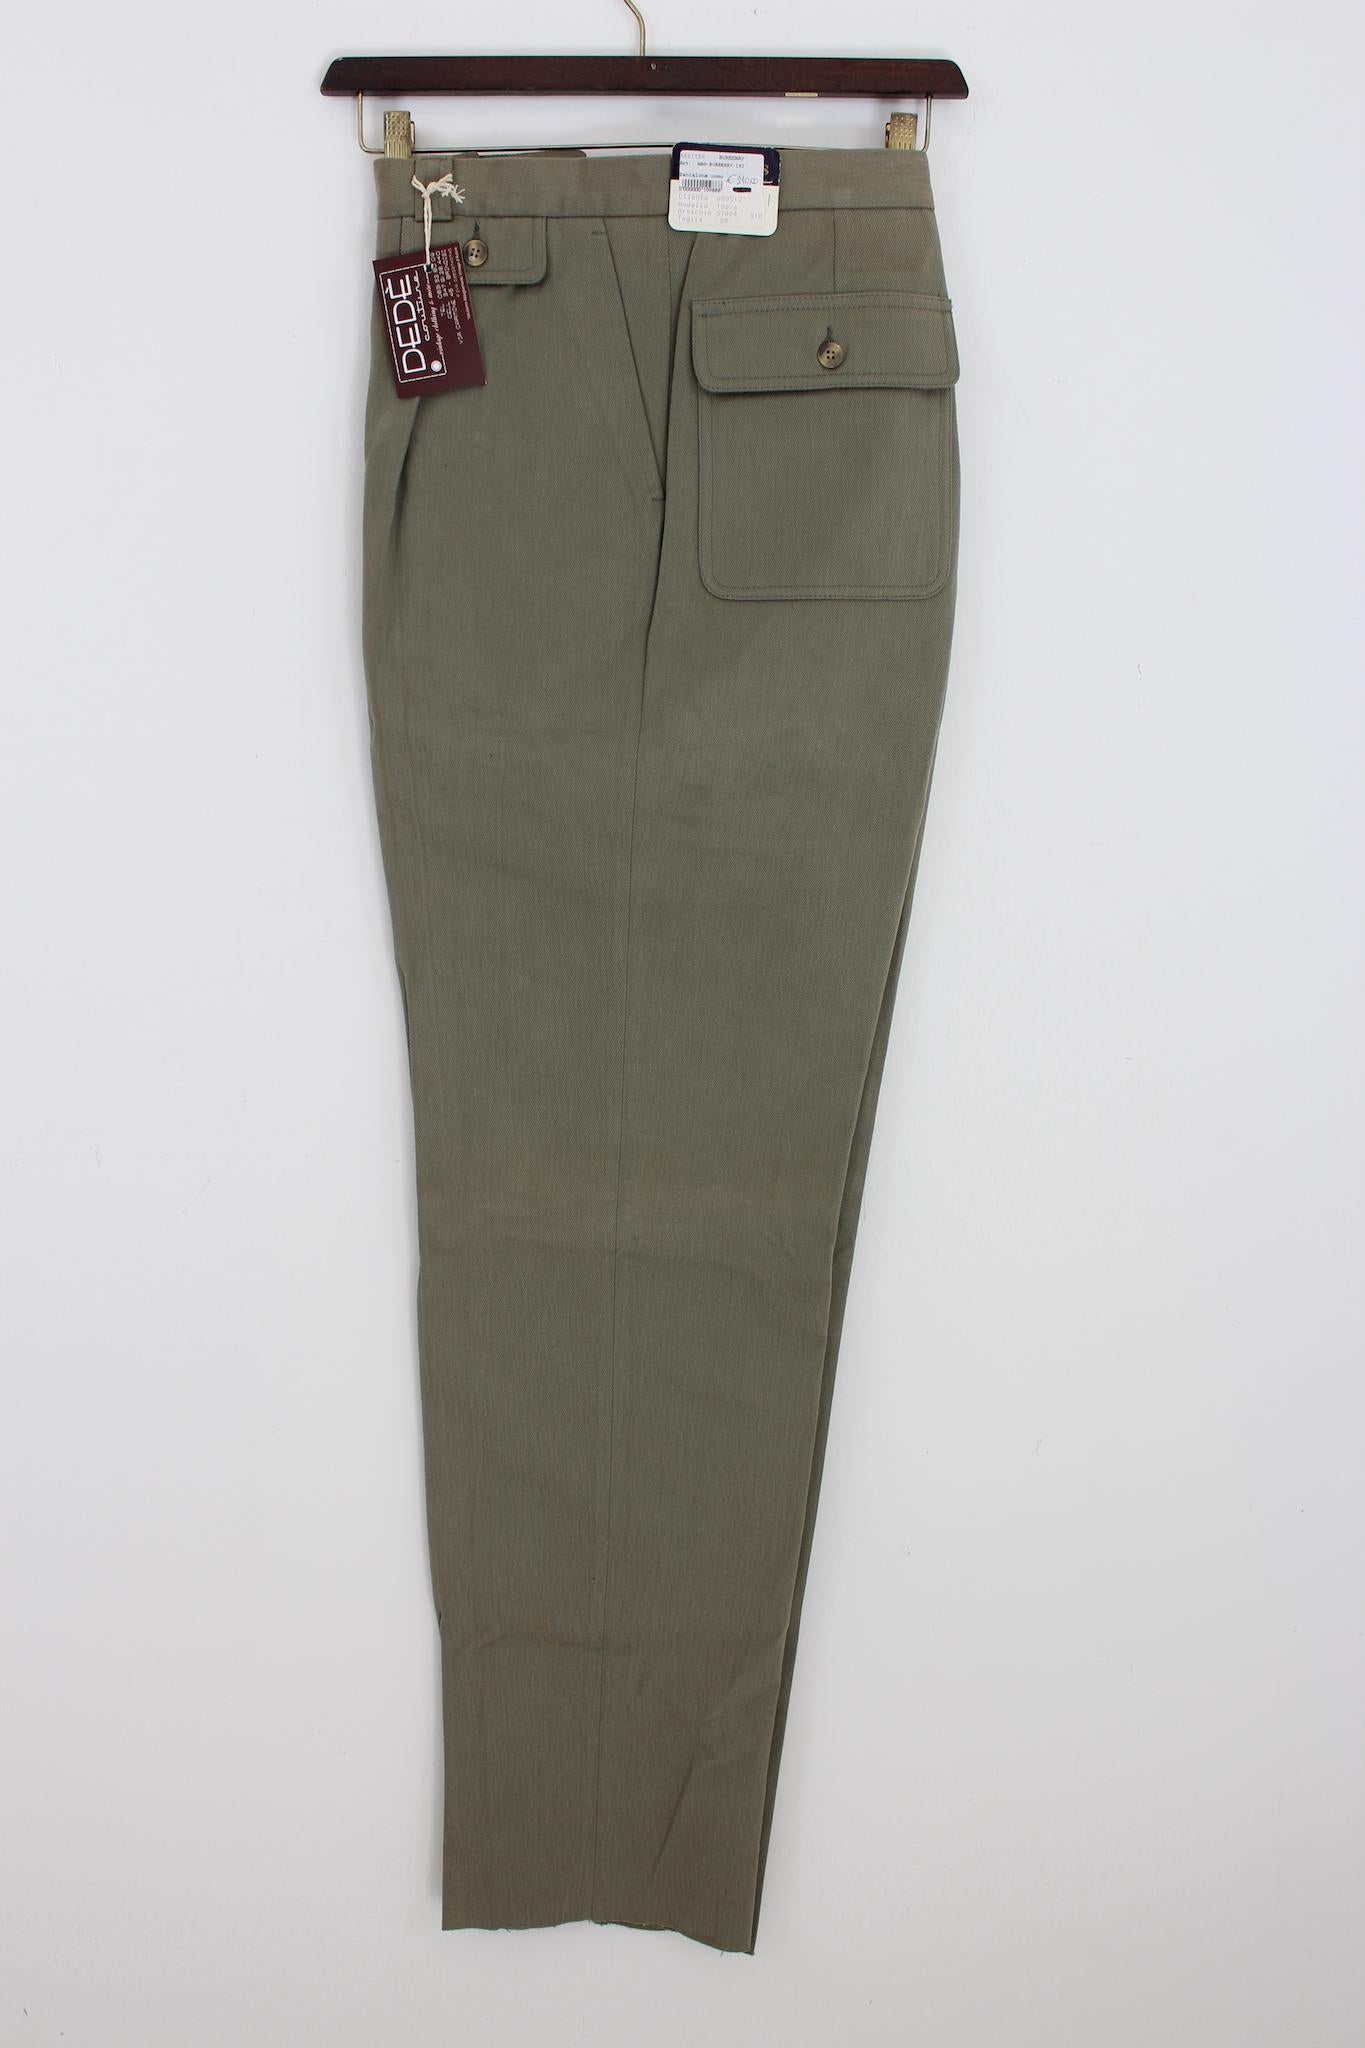 Burberry 90er Jahre Vintage klassische Hose. Modell mit geradem Bein, Farbe hellgrün, 100% Baumwolle. Hergestellt in Italien. Neu mit Etikett, aus dem Lagerbestand.

Größe: 58 It 48 Us 48 Uk

Taille: 50 cm
Länge: 122 cm
Saum: 23 cm